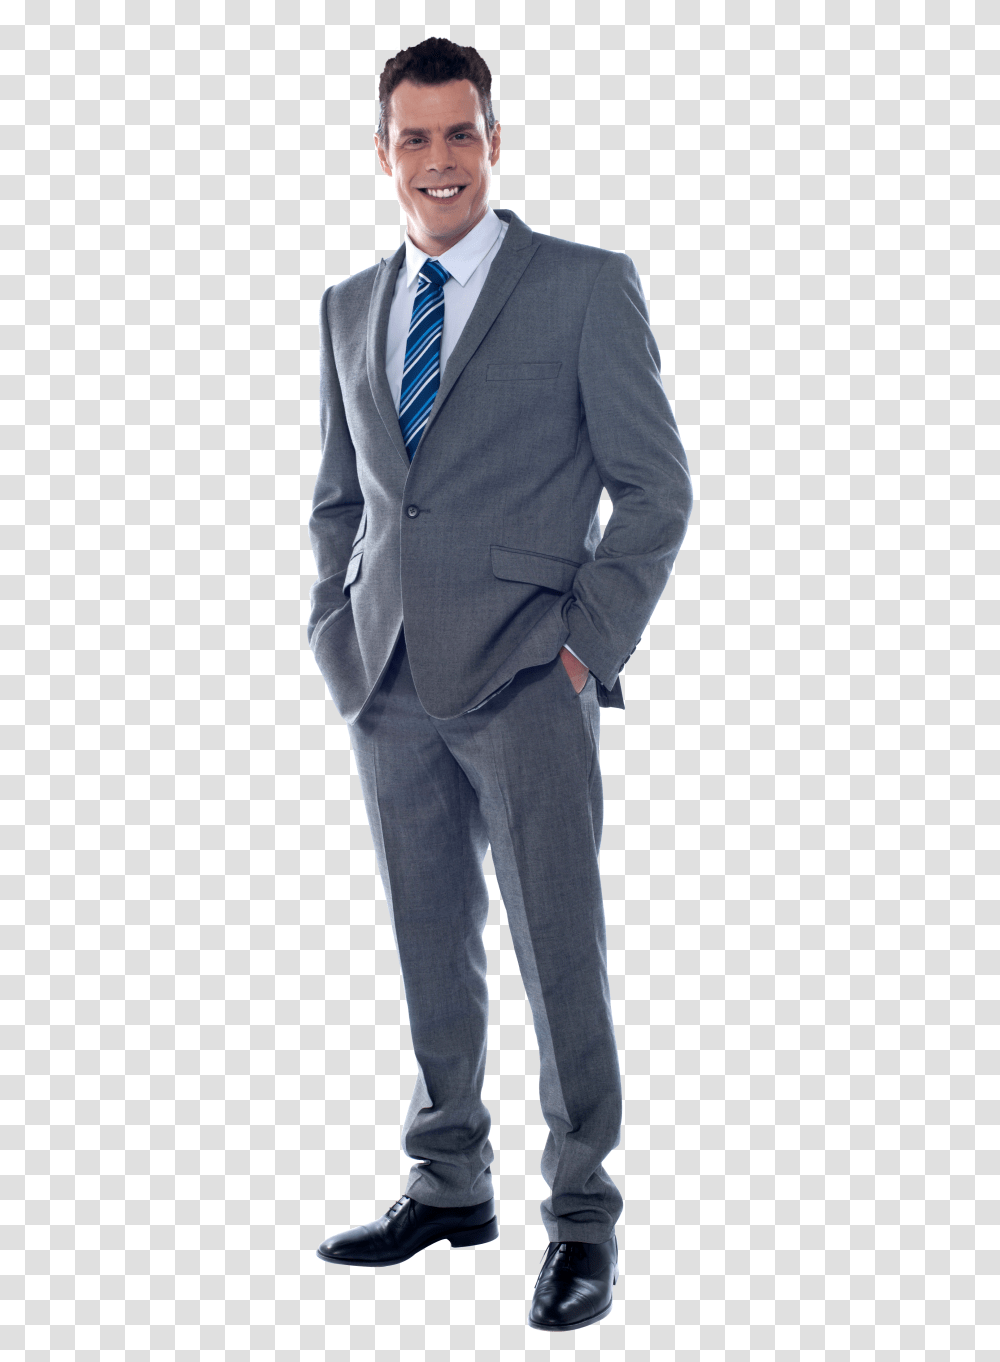 Men In Suit Image Man In Suit, Overcoat, Tie, Person Transparent Png